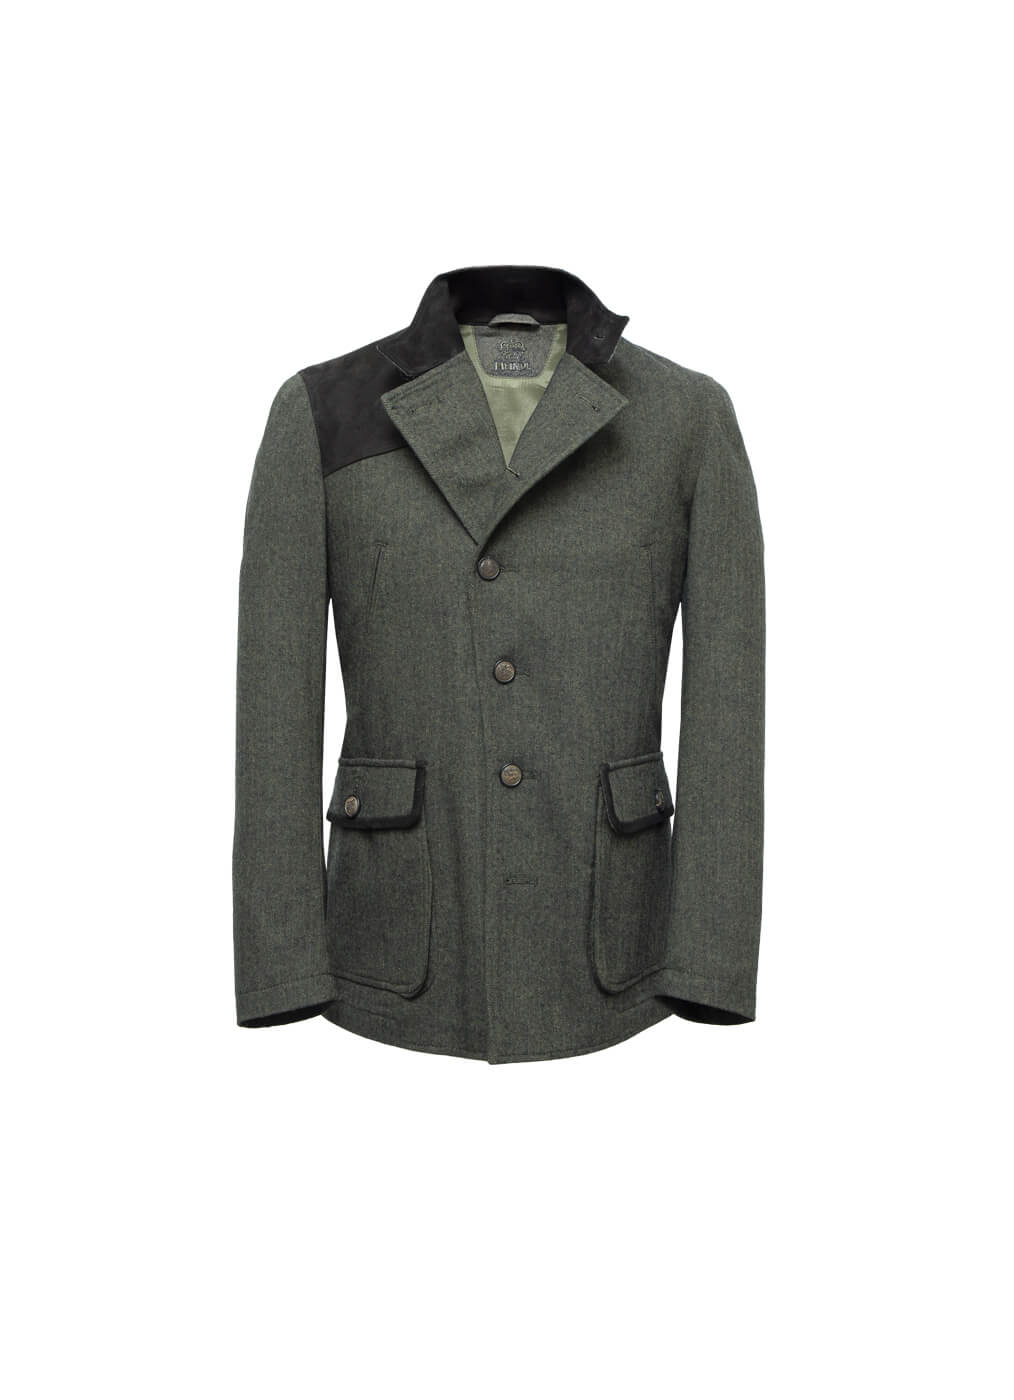 Fabric Jacket Men “Lancester”, urban green